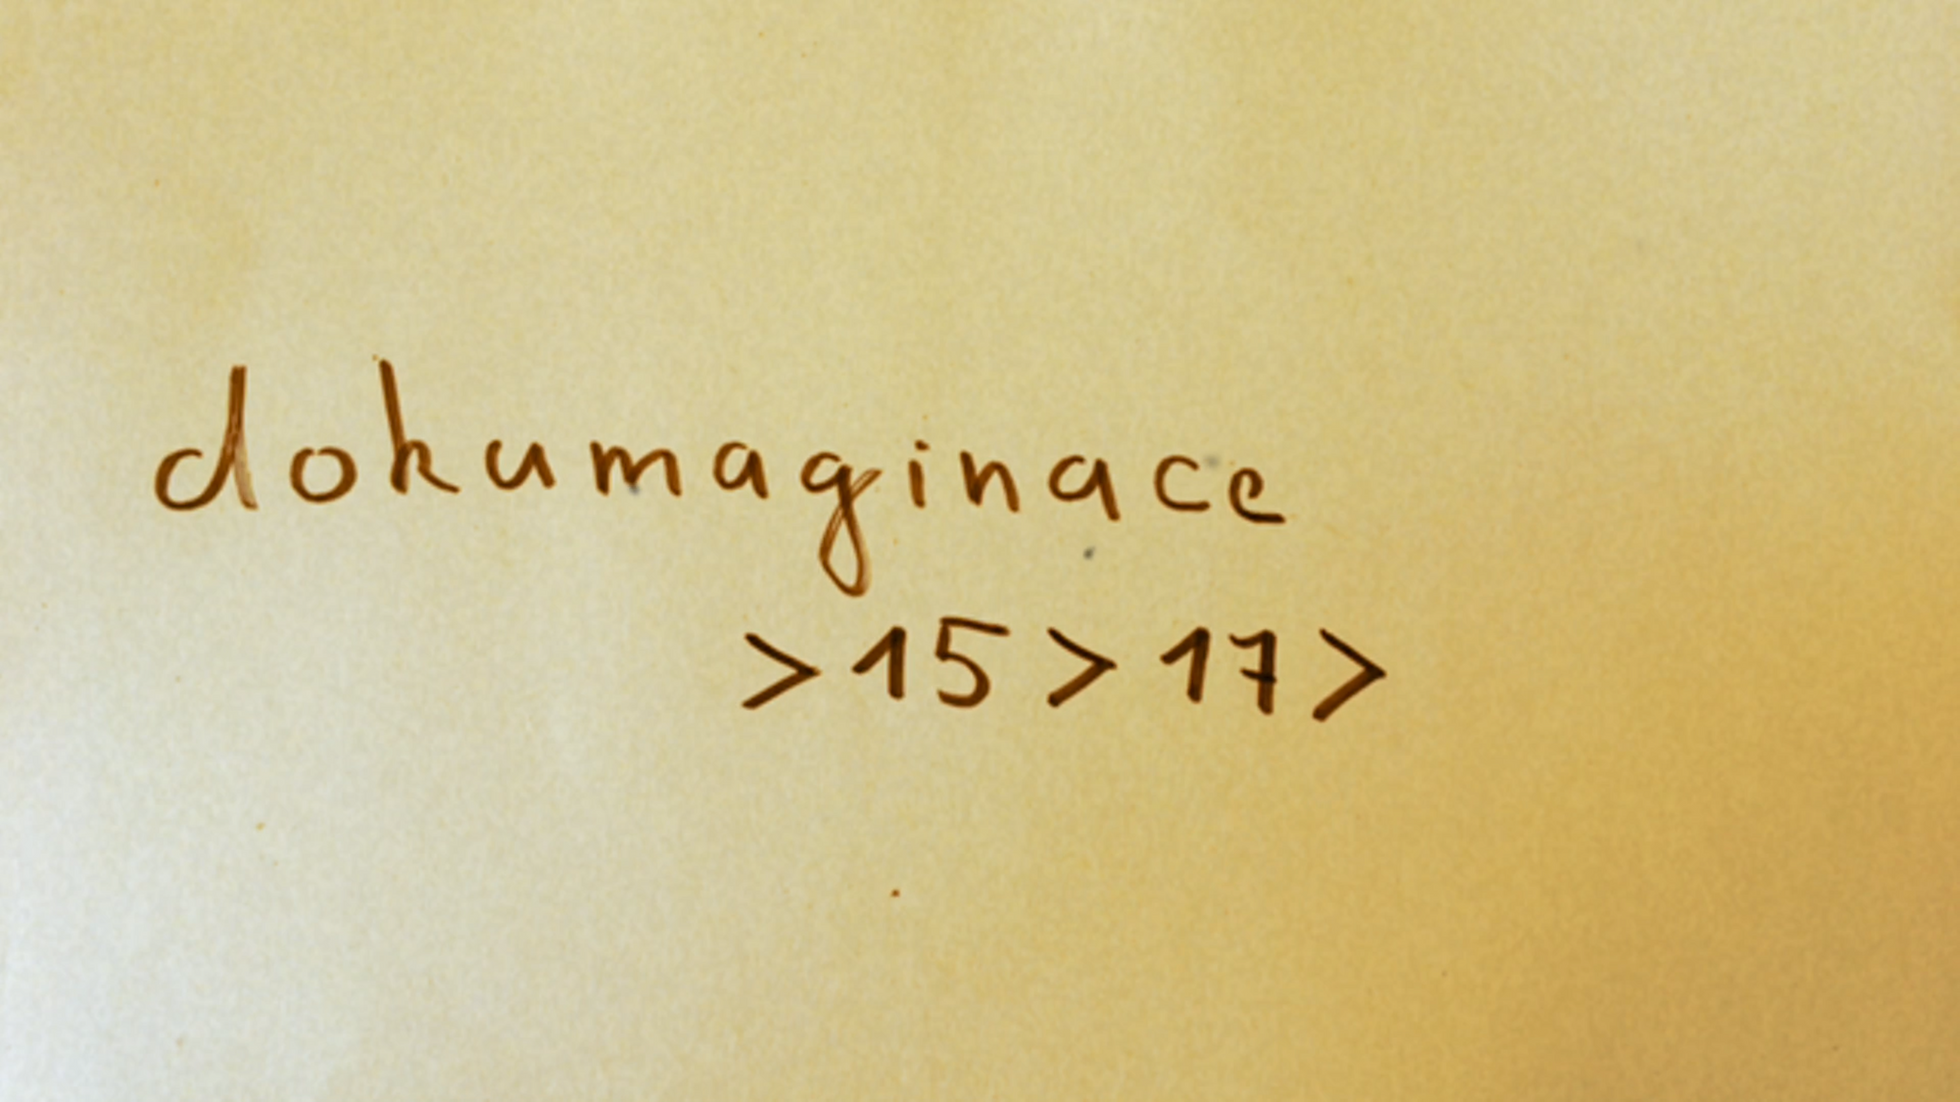 documaginace -15-17-.mp4